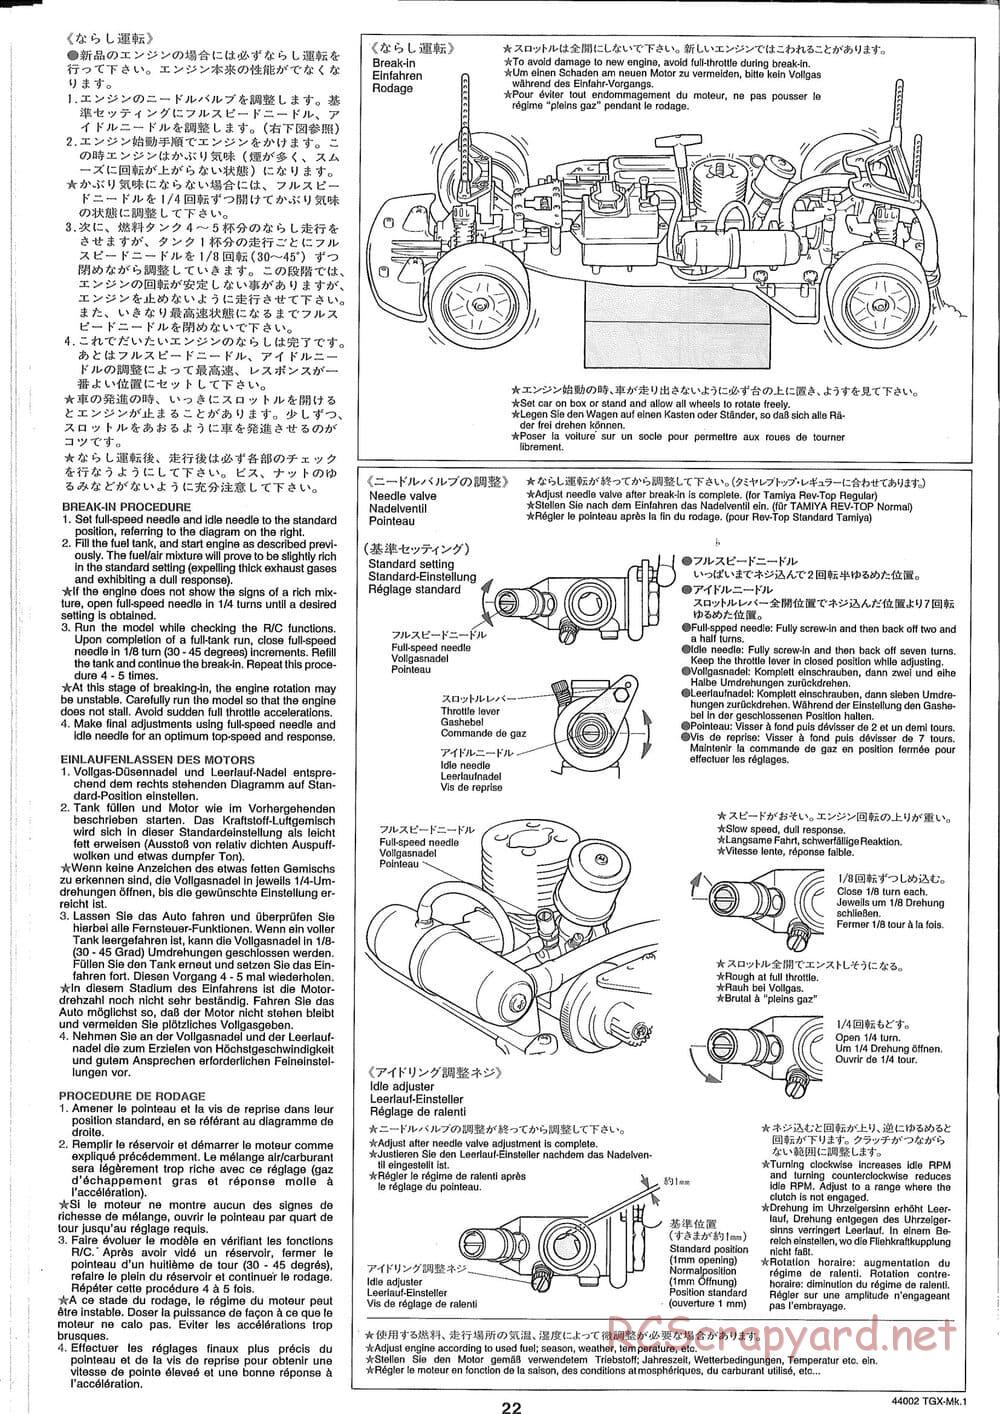 Tamiya - TGX Mk.1 TS Chassis Chassis - Manual - Page 22